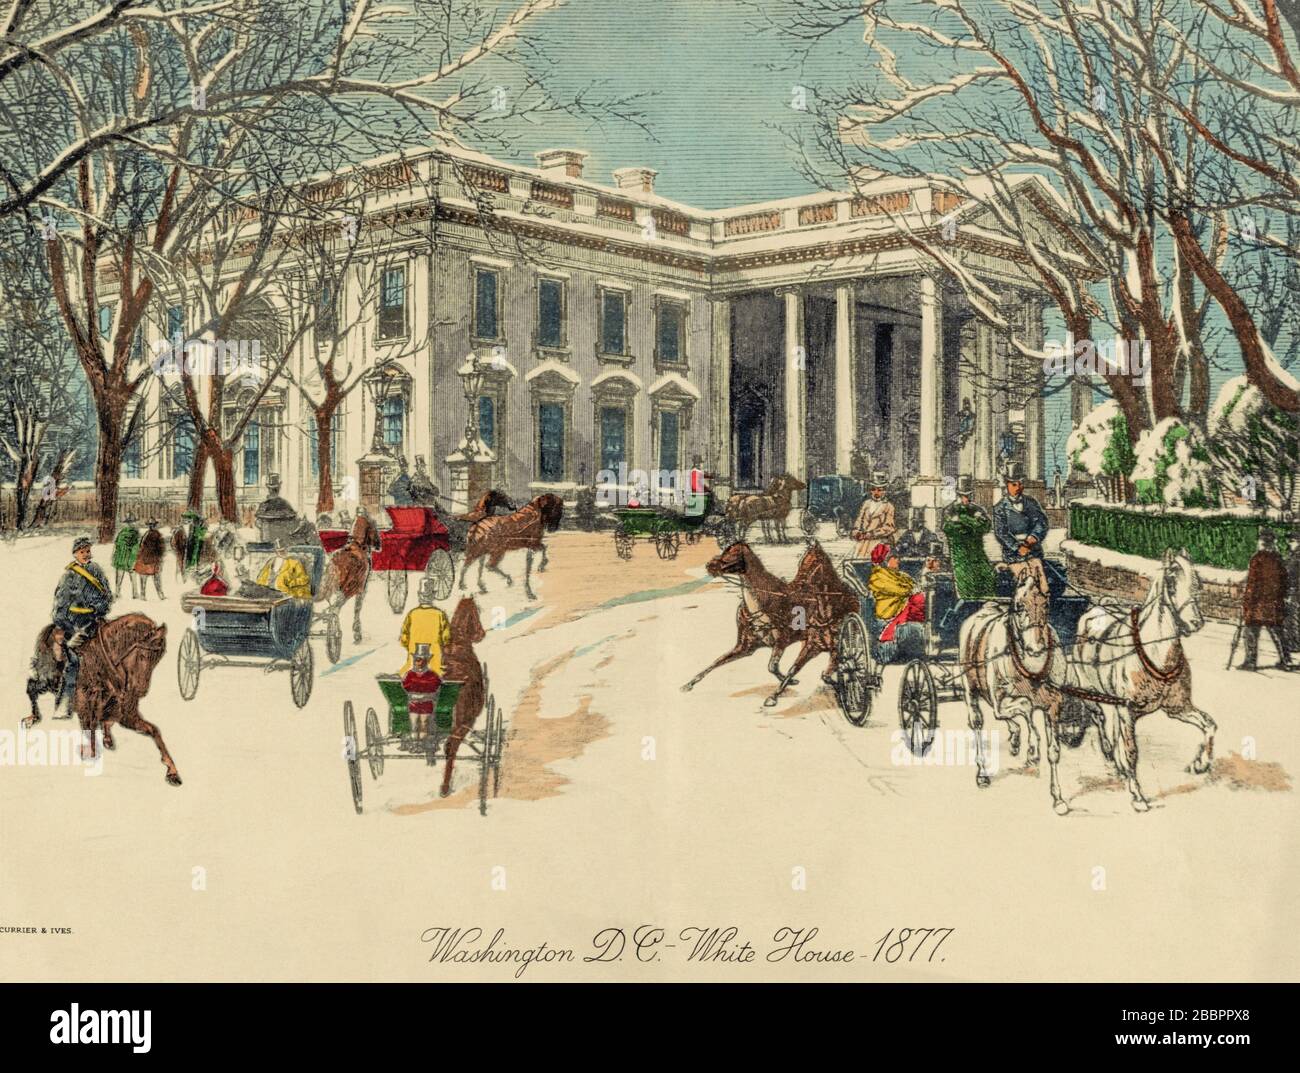 Das Weiße Haus, Washington D.C. Vereinigte Staaten von Amerika. Pferdekutschen und Fußgänger in der Nähe des Nordportikus im Winter 1877. Nach einem von Currier & Ives veröffentlichten Werk eines unbekannten Künstlers. Stockfoto